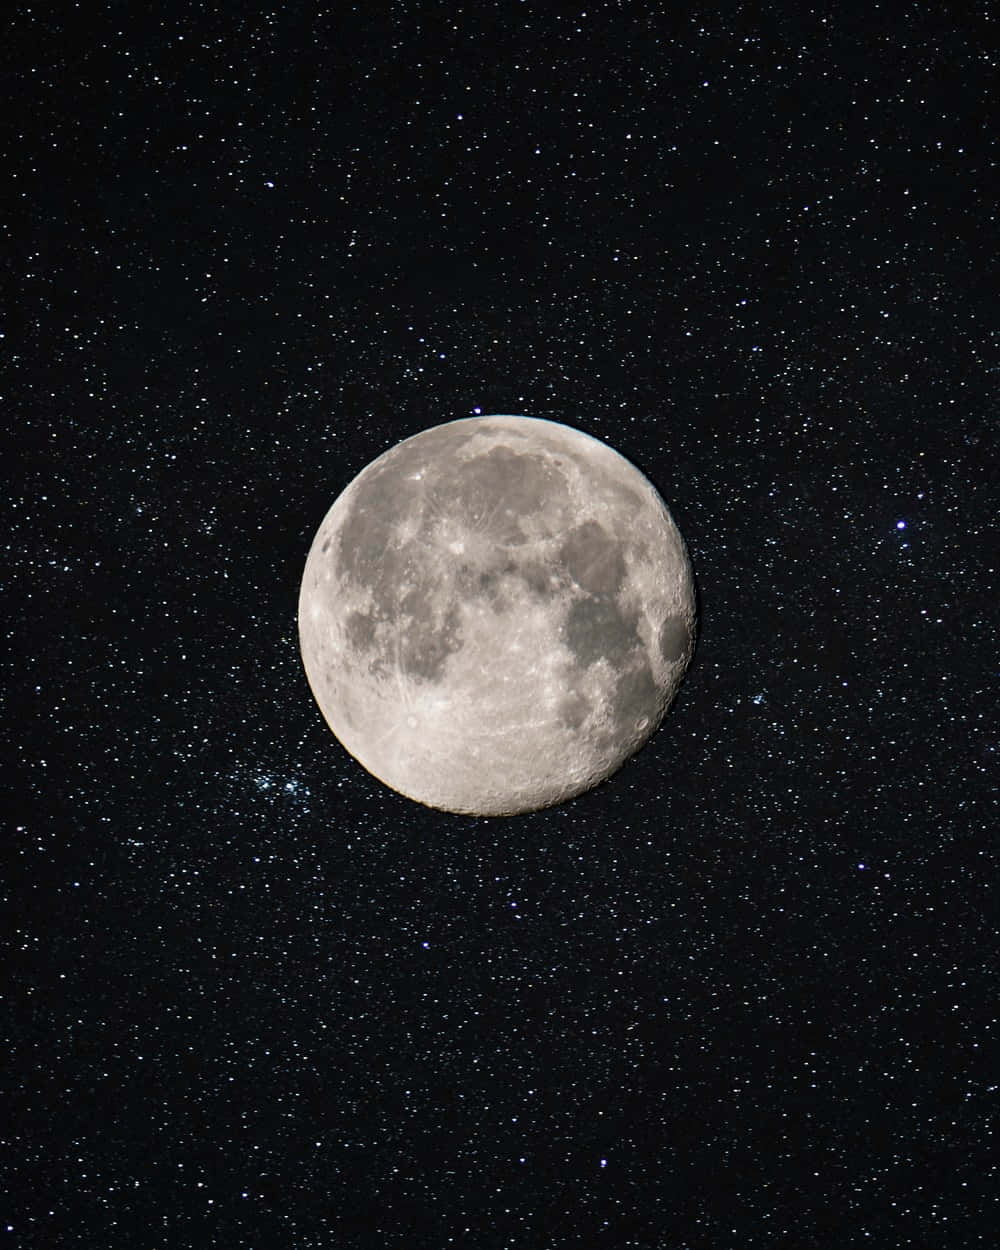 Imagendel Cielo Estrellado Y La Luna Llena.